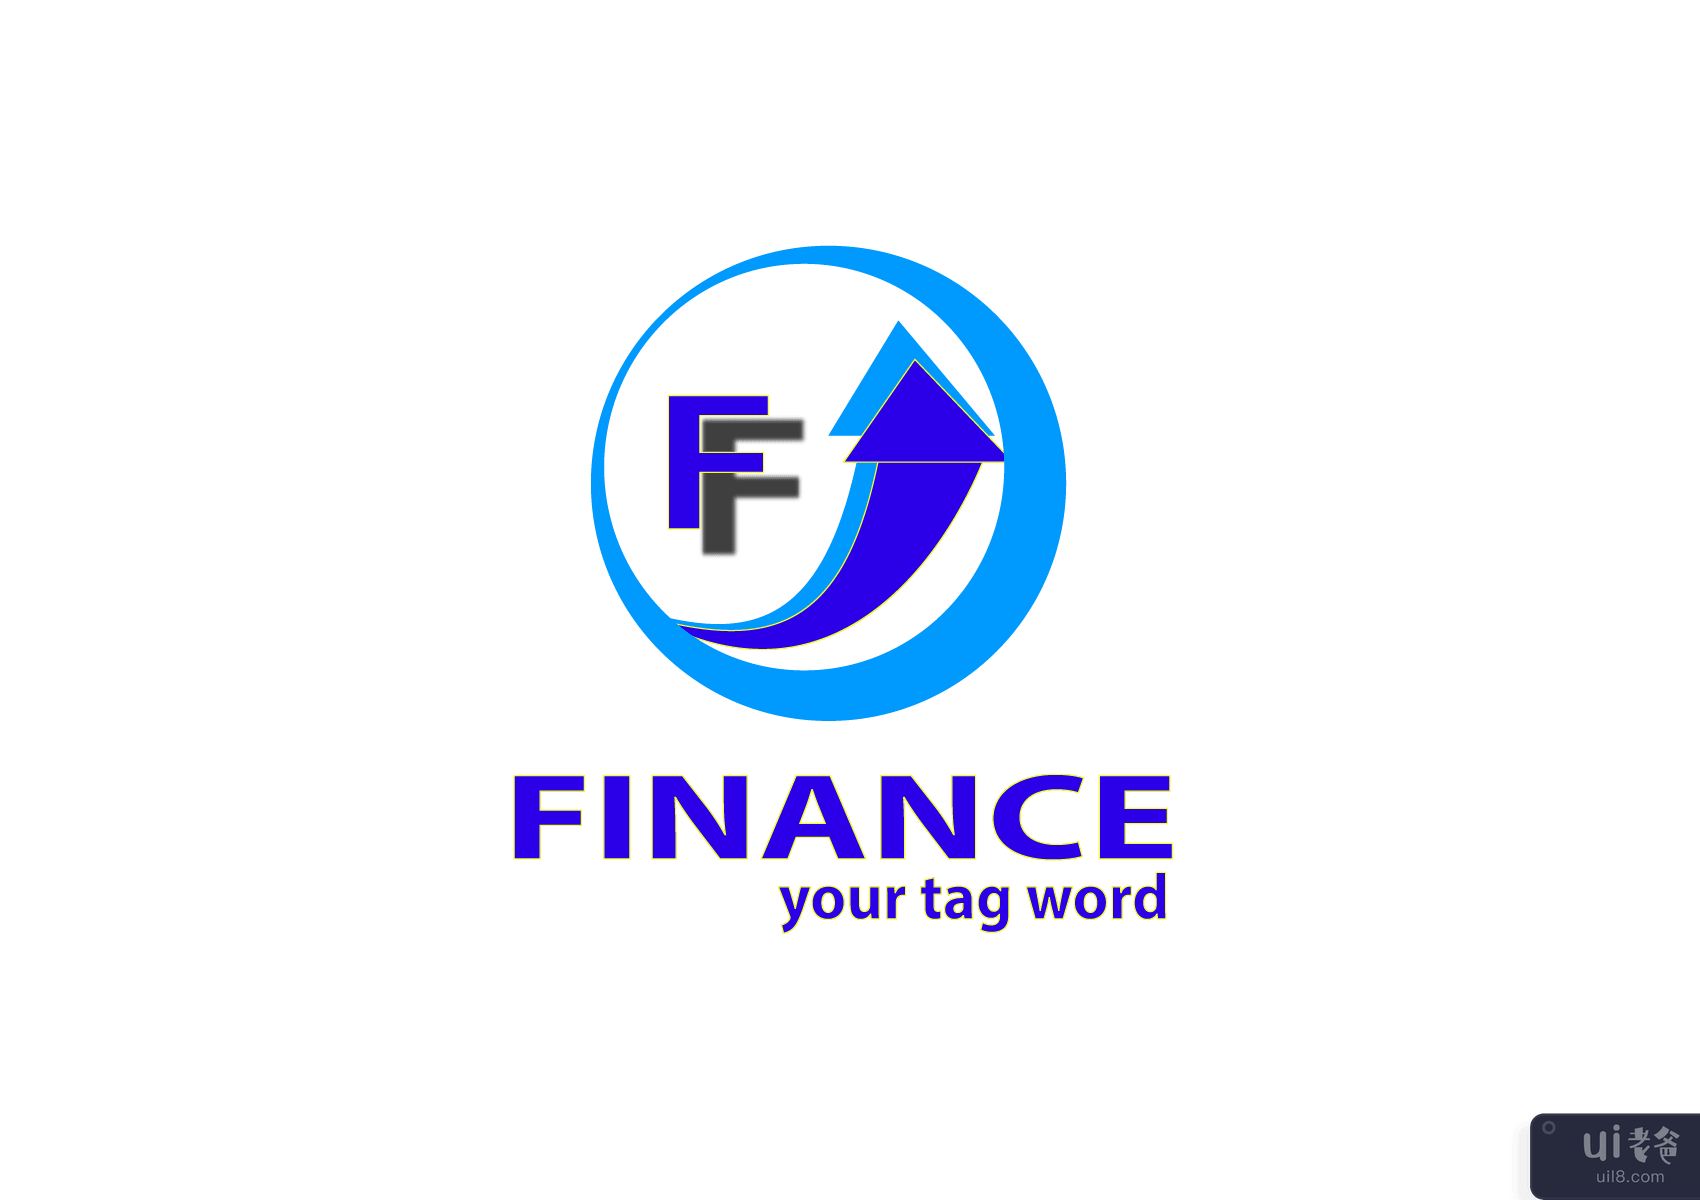 企业财务标志模板(Corporate Finance logo Template)插图